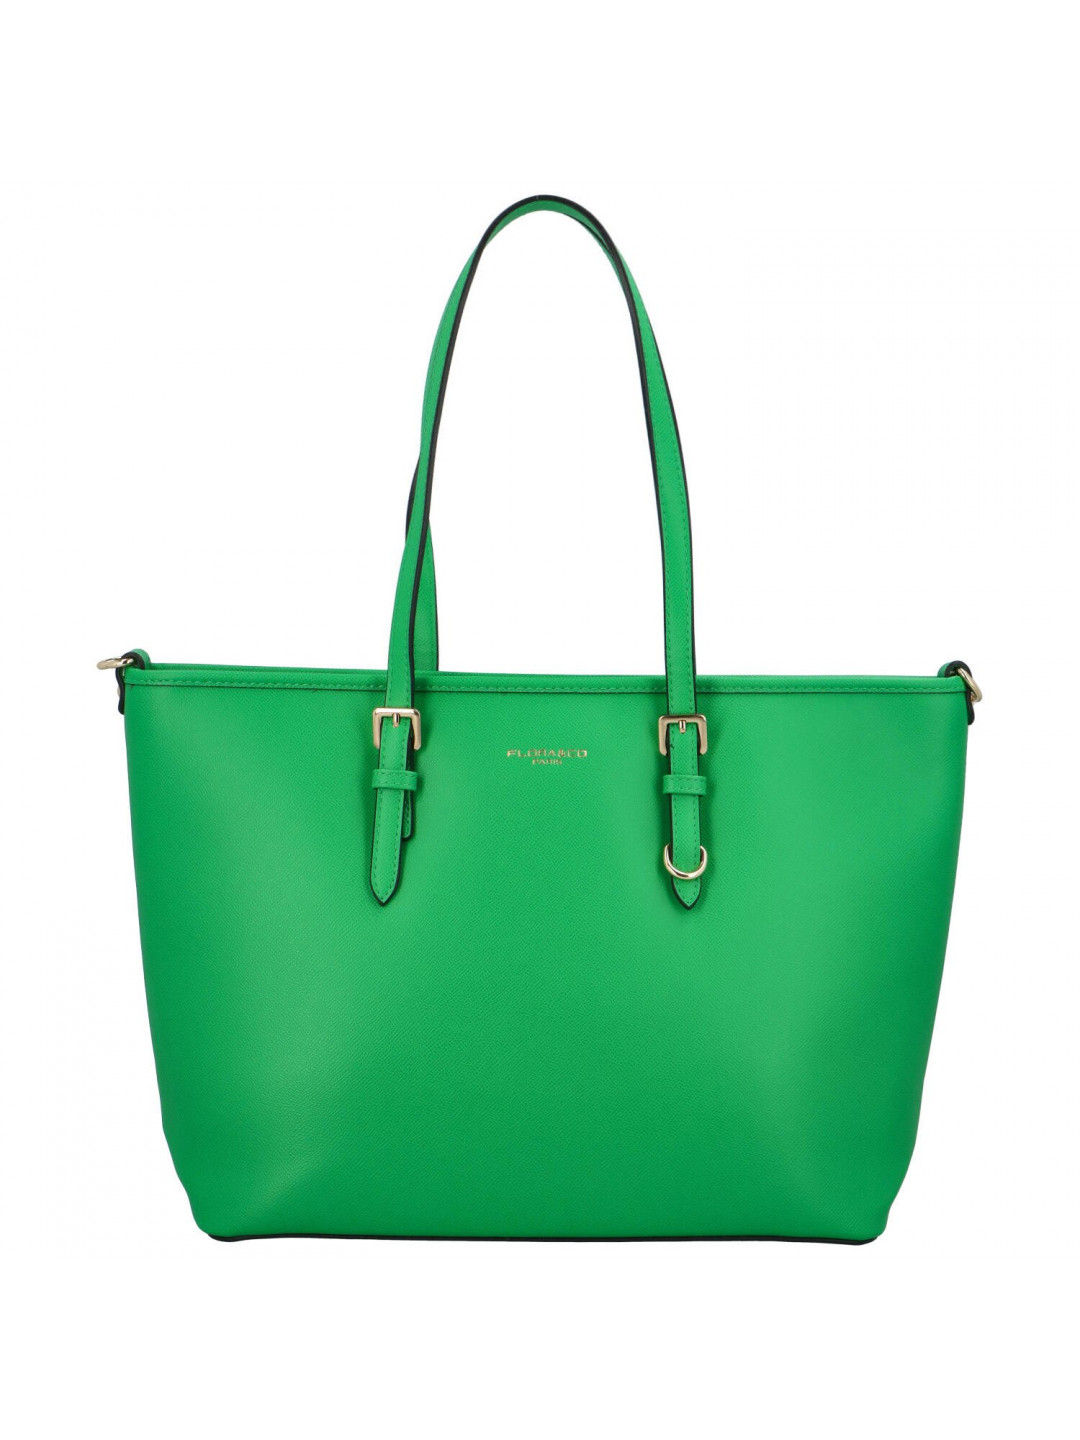 Dámská elegantní kabelka přes rameno zelená – FLORA & CO Viola